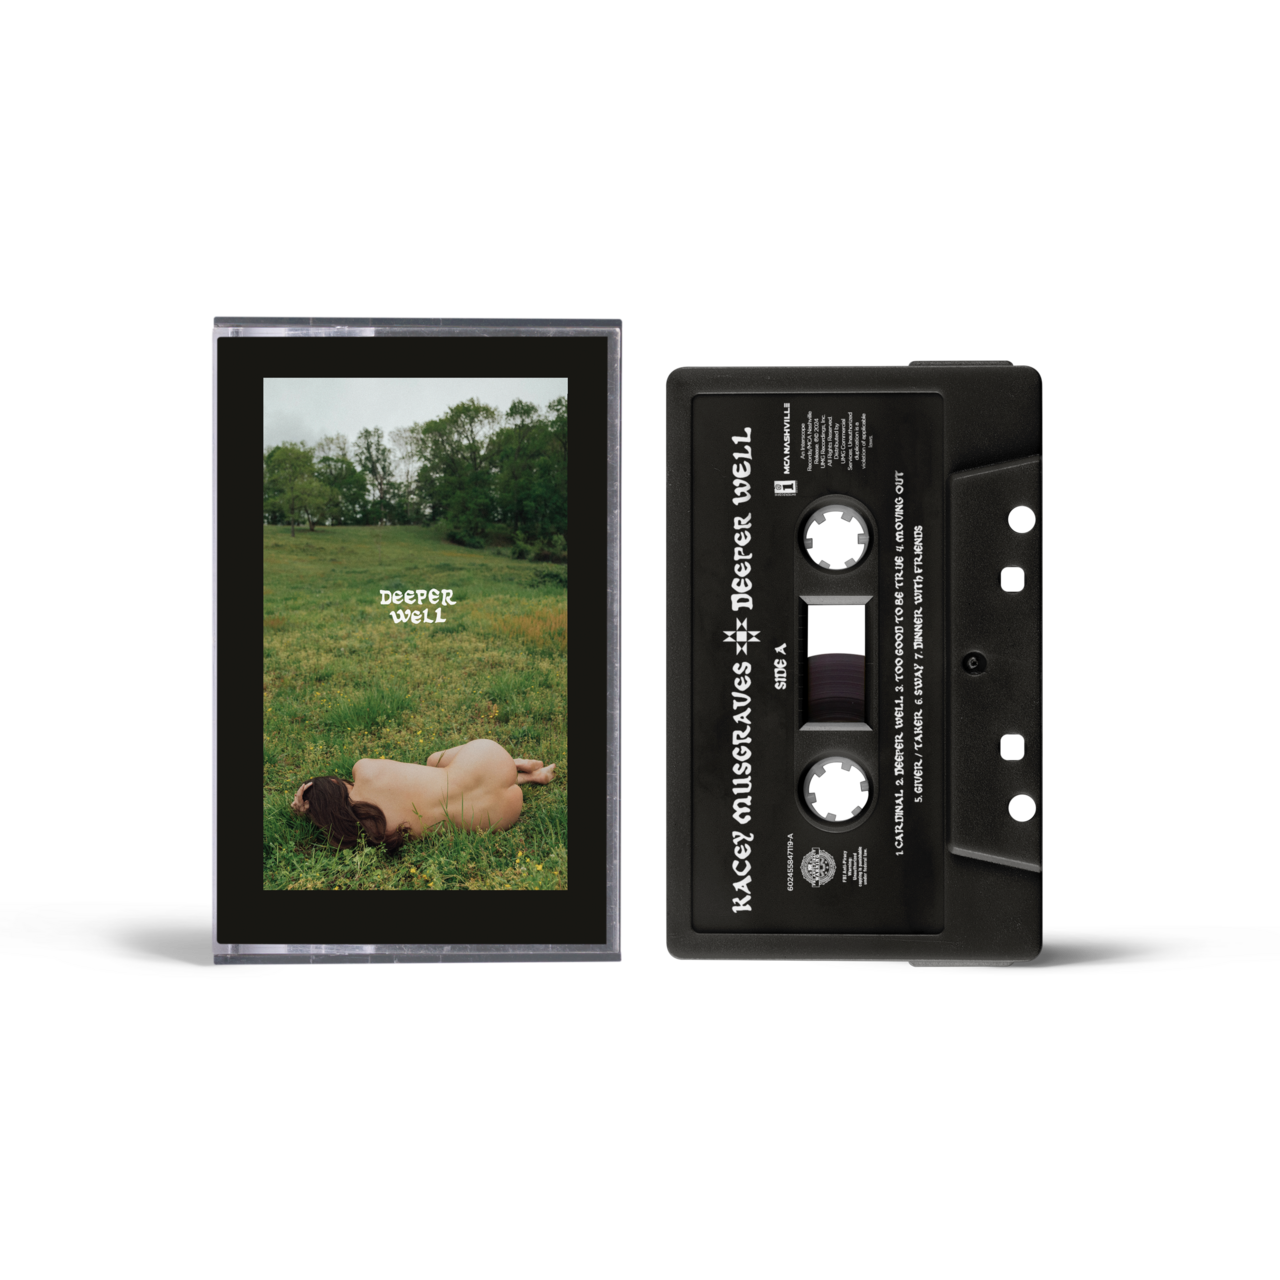 Deeper Well: Limited Cassette (w/ Alt 'Nude' Artwork), Green Cassette + Signed Art Card